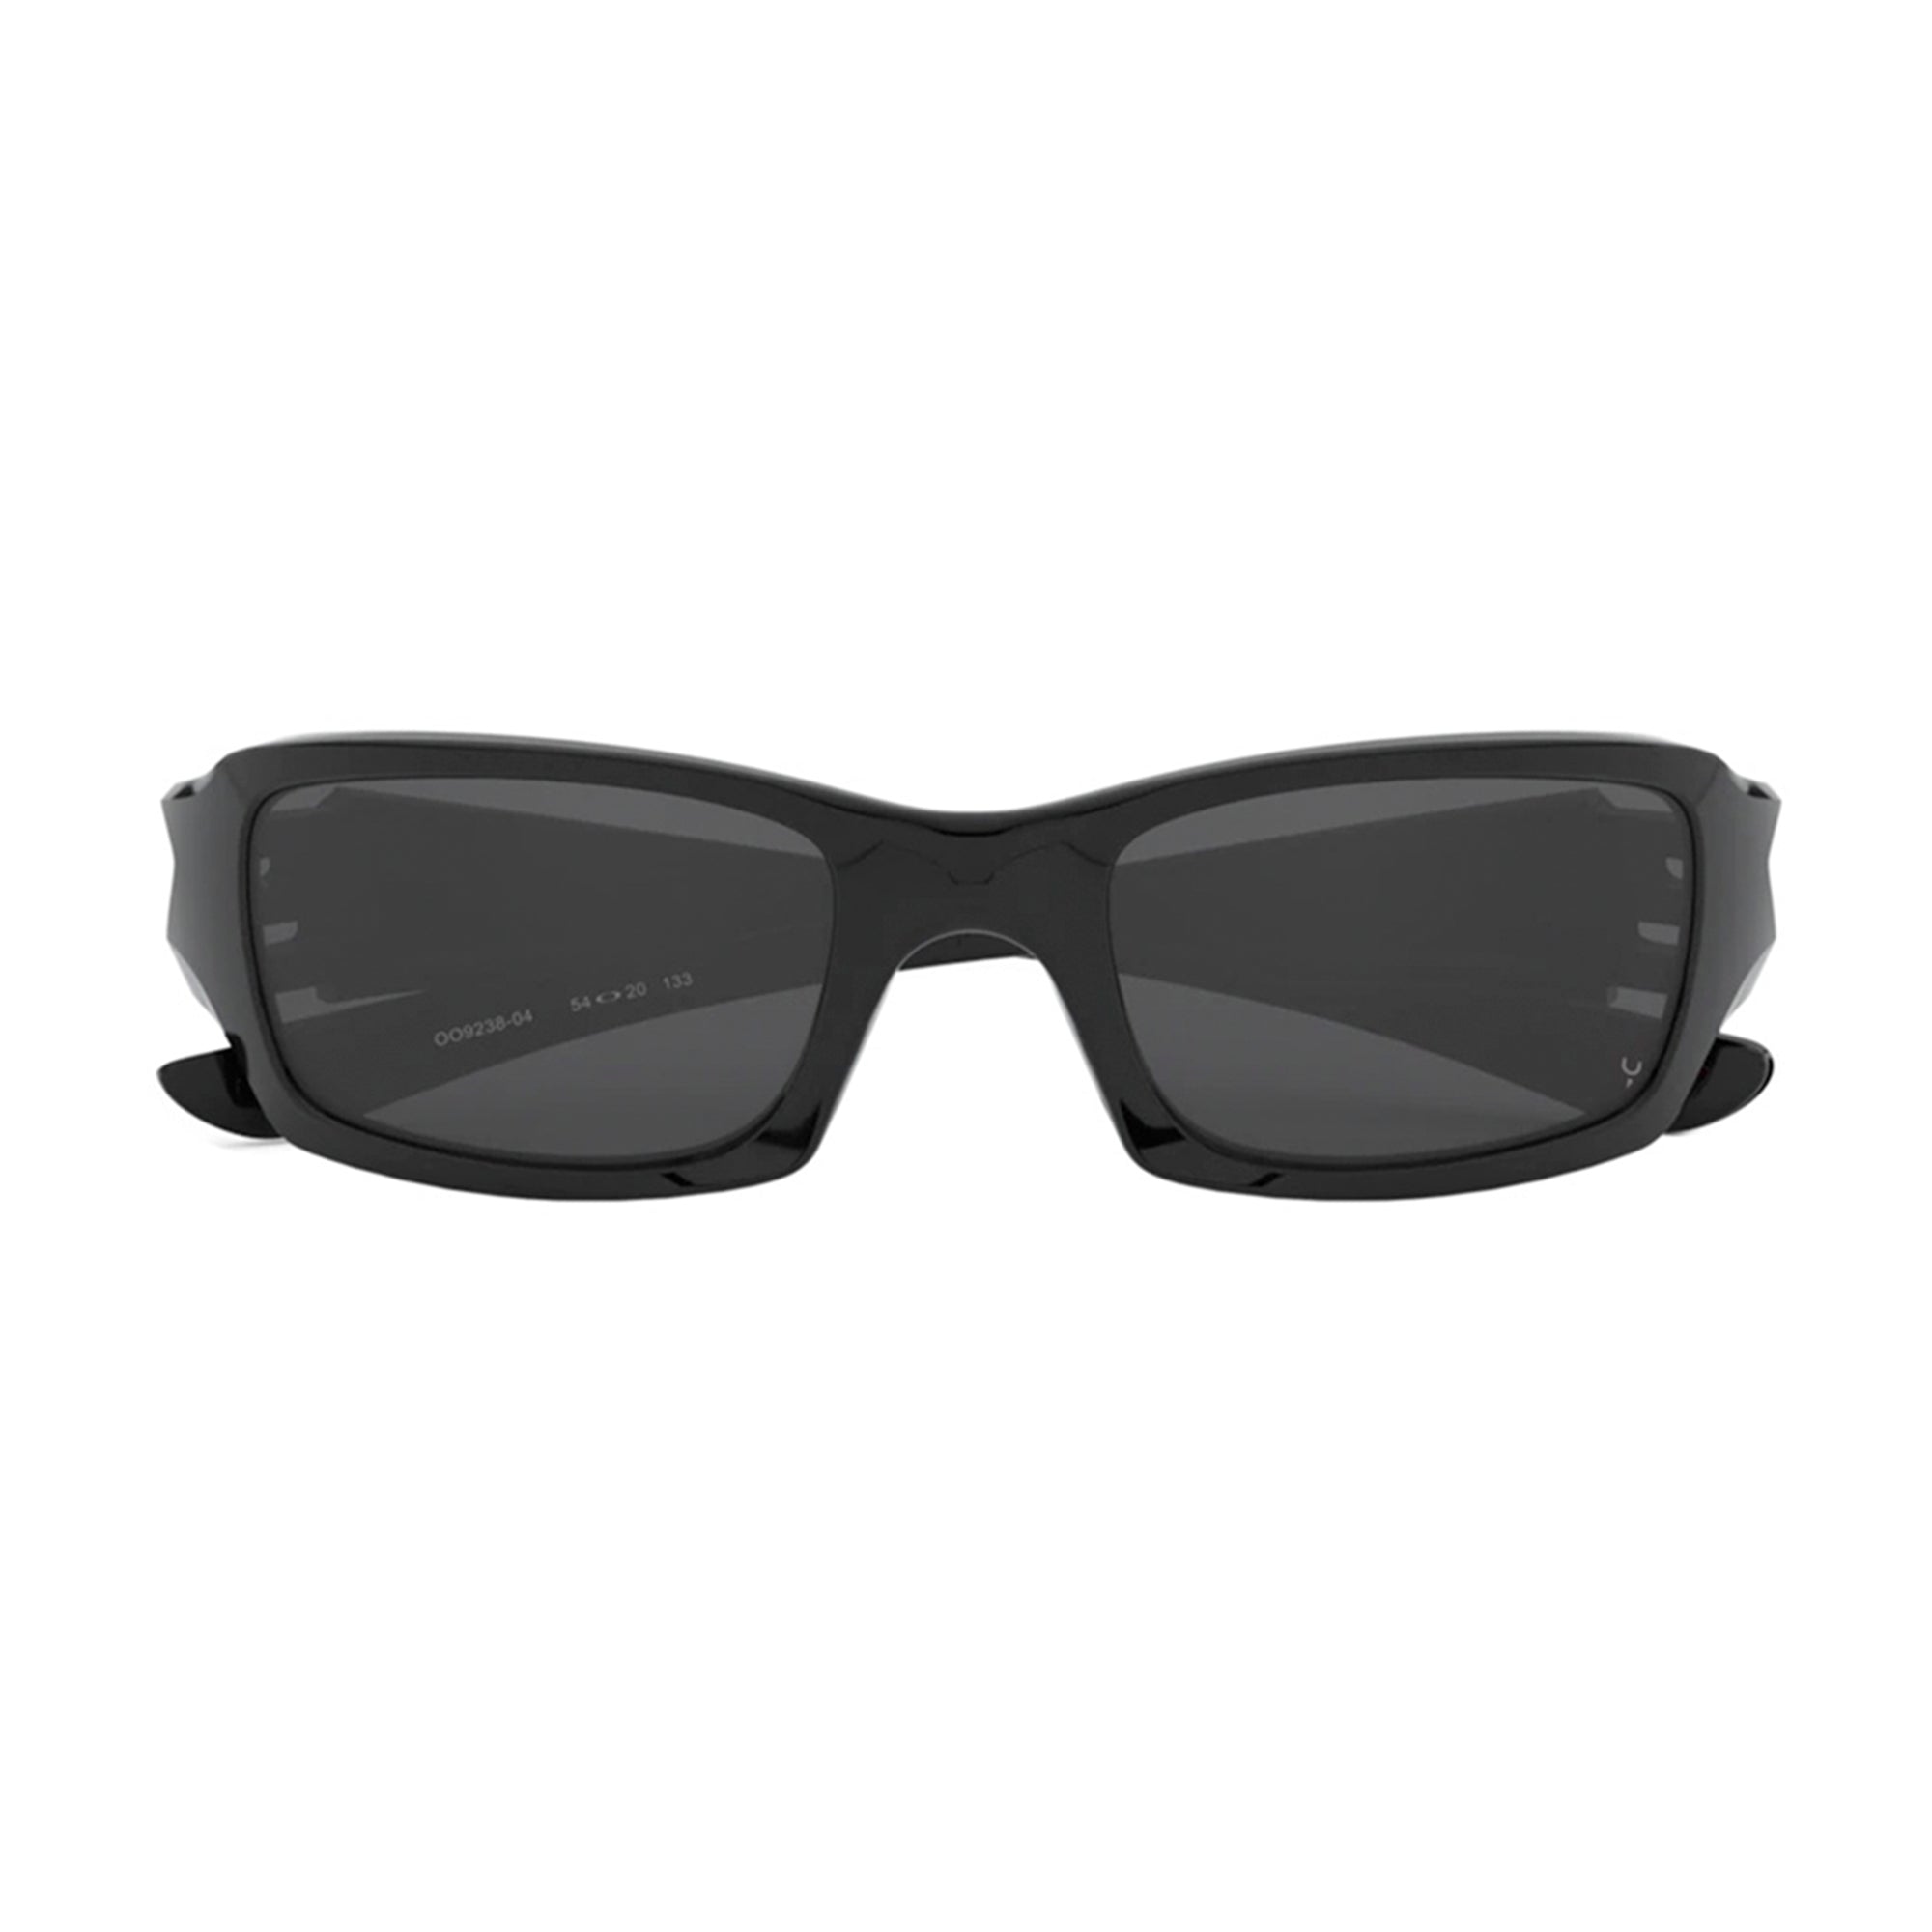 Oakley OO9238-04 Fives Squared Sunglasses Polished Black Frame Grey Lens